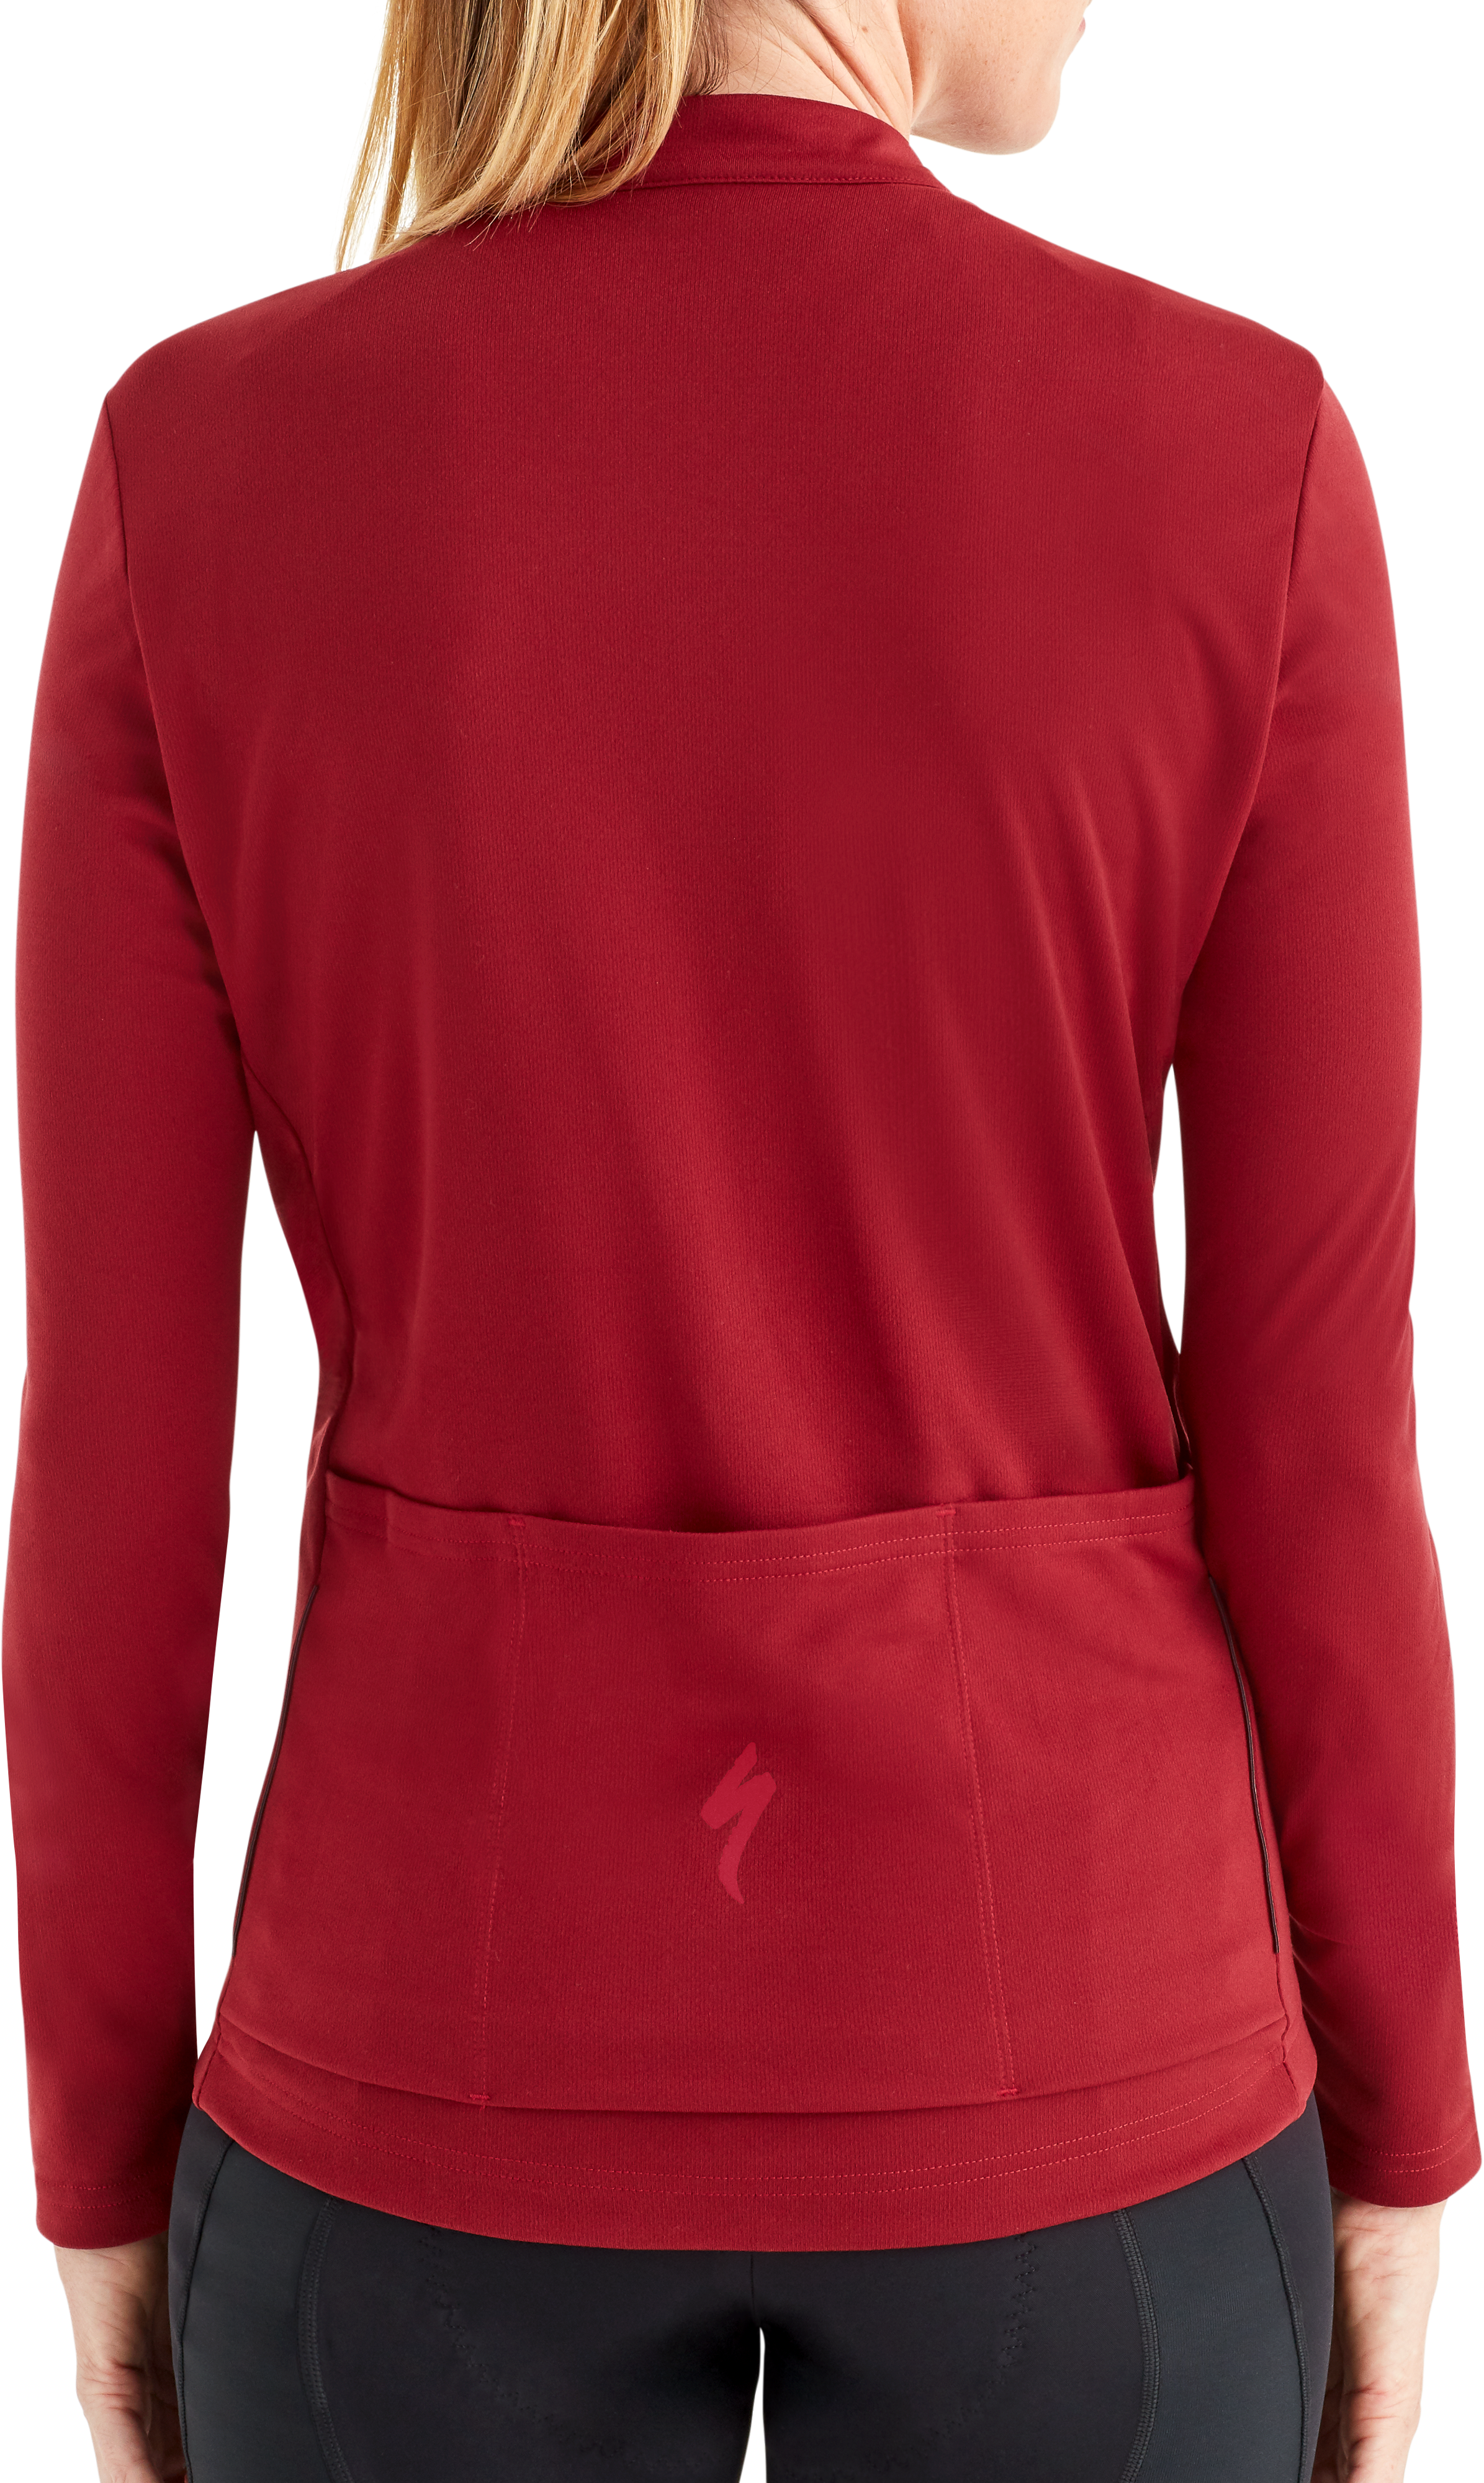 Specialized Women's RBX Classic Jersey Long Sleeve - www